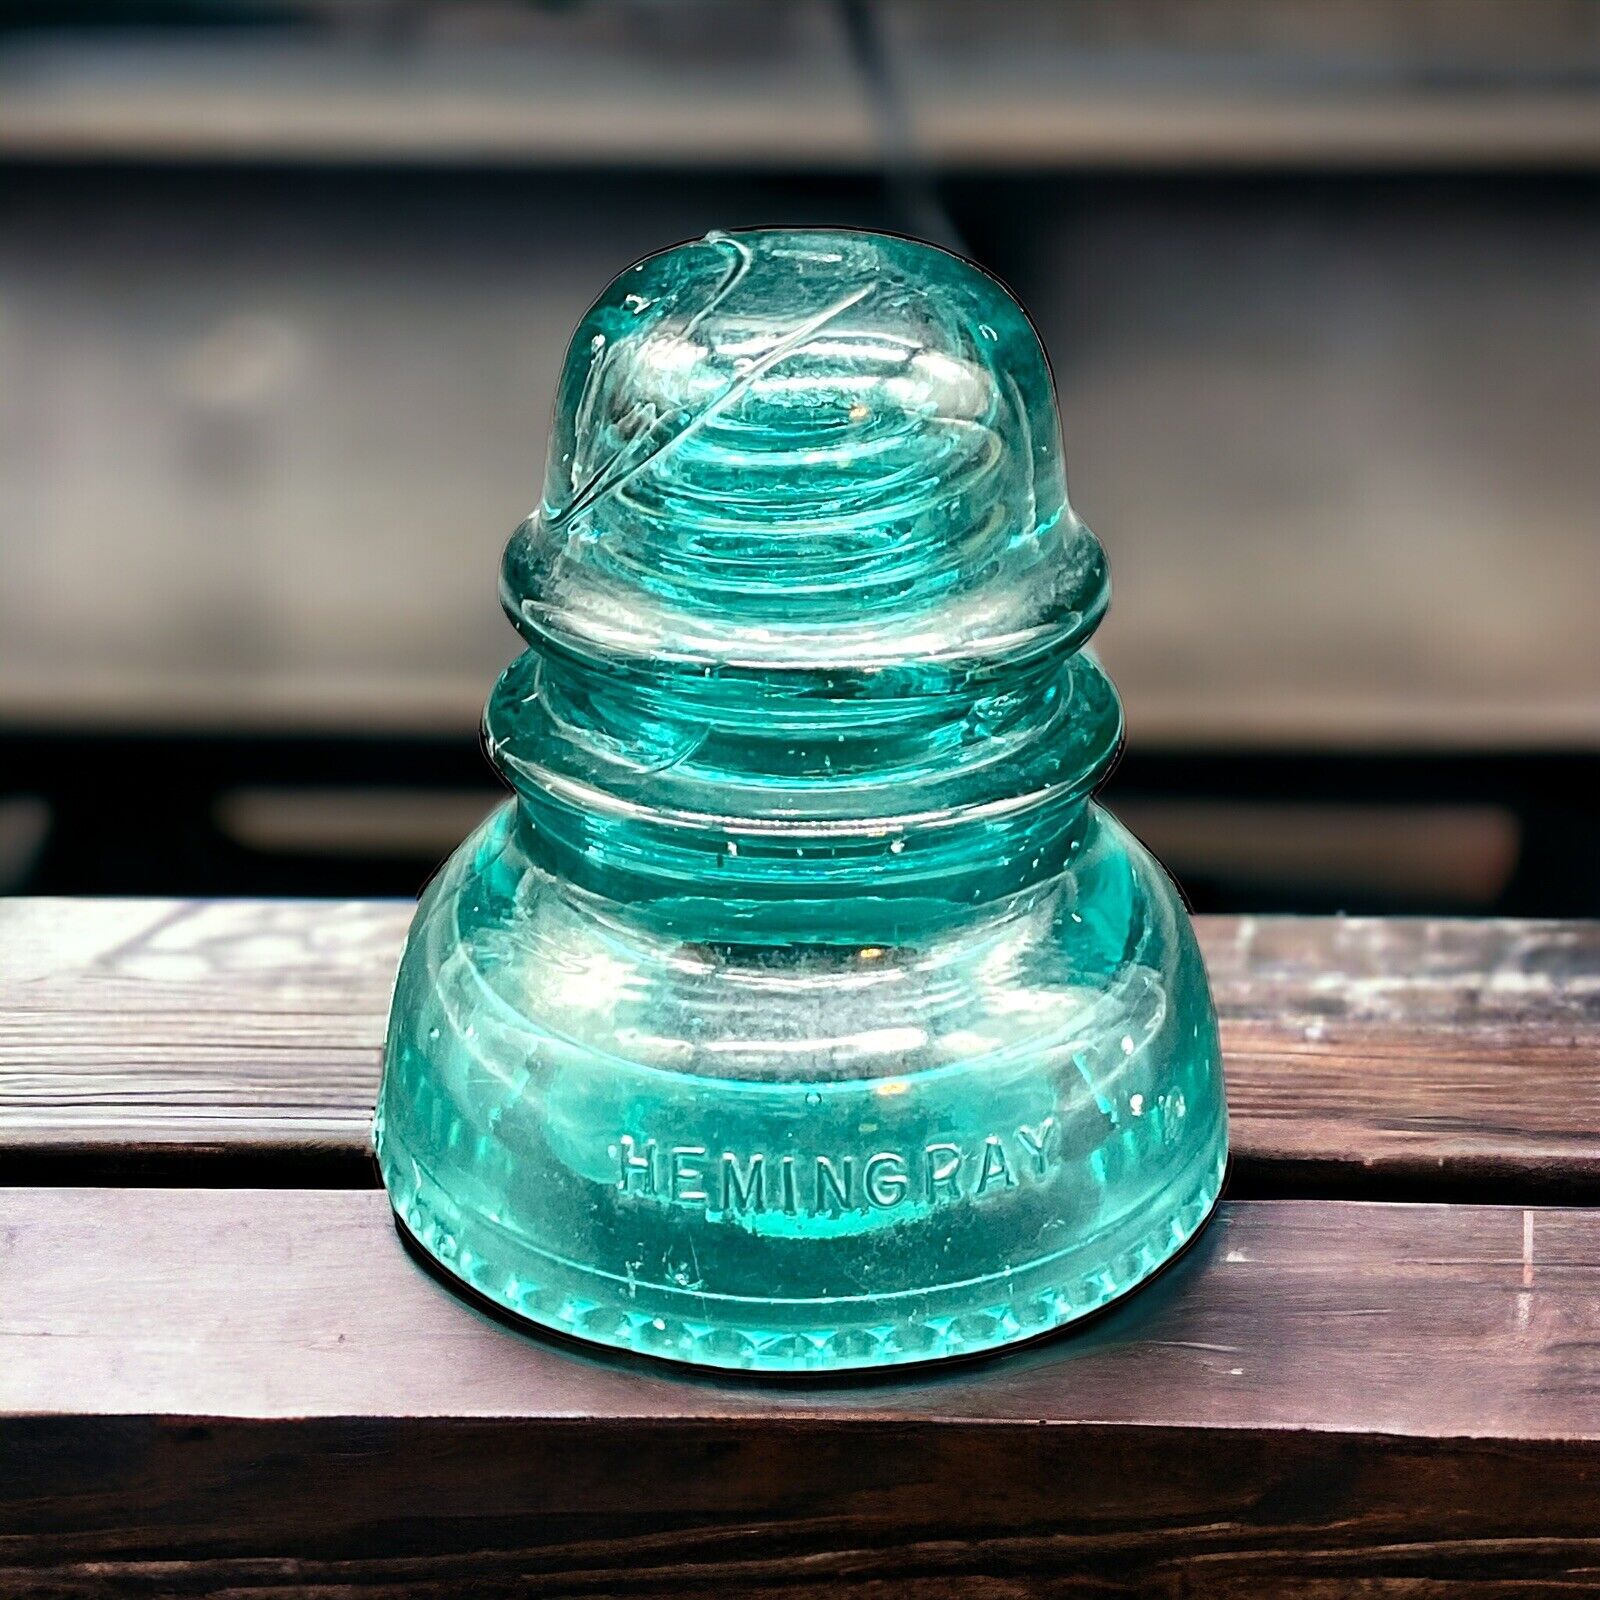 Hemingray Aqua Blue/Green No 40 MADE IN U.S.A. Vintage Glass Insulator